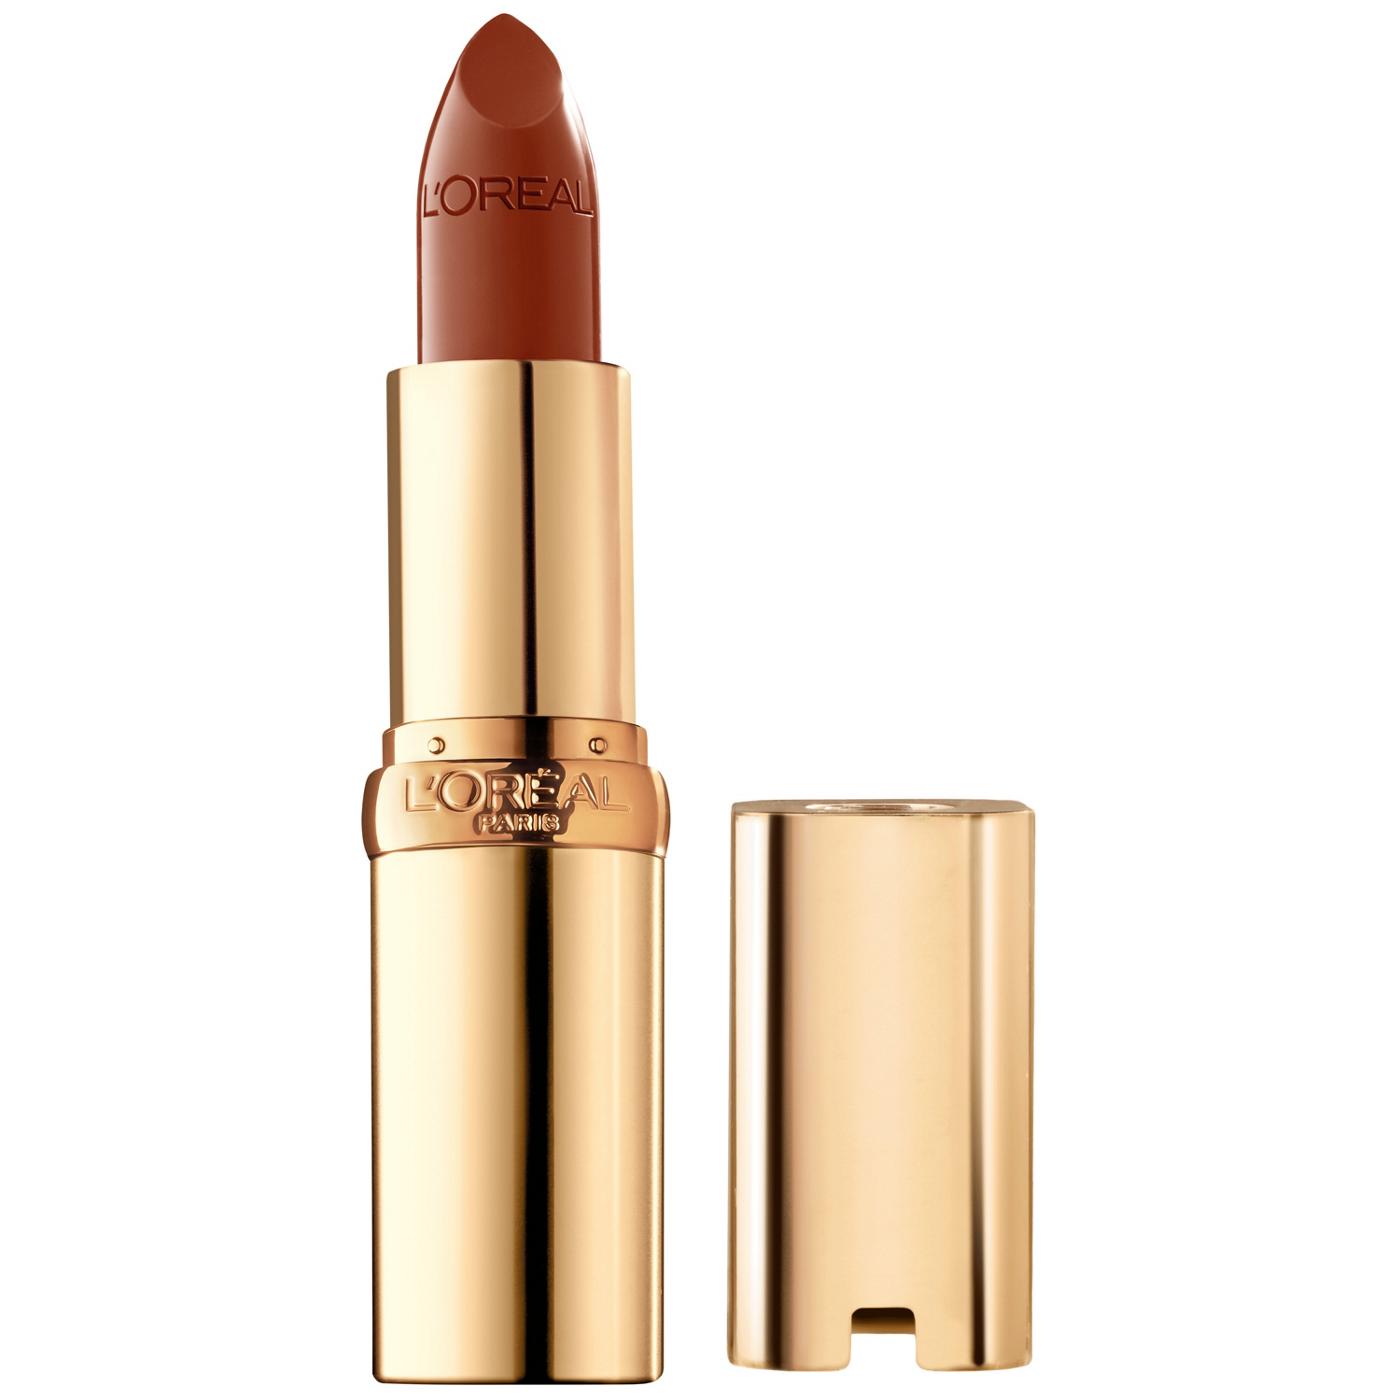 L'Oréal Paris Colour Riche Original Satin Lipstick - Cinnamon Toast; image 1 of 5